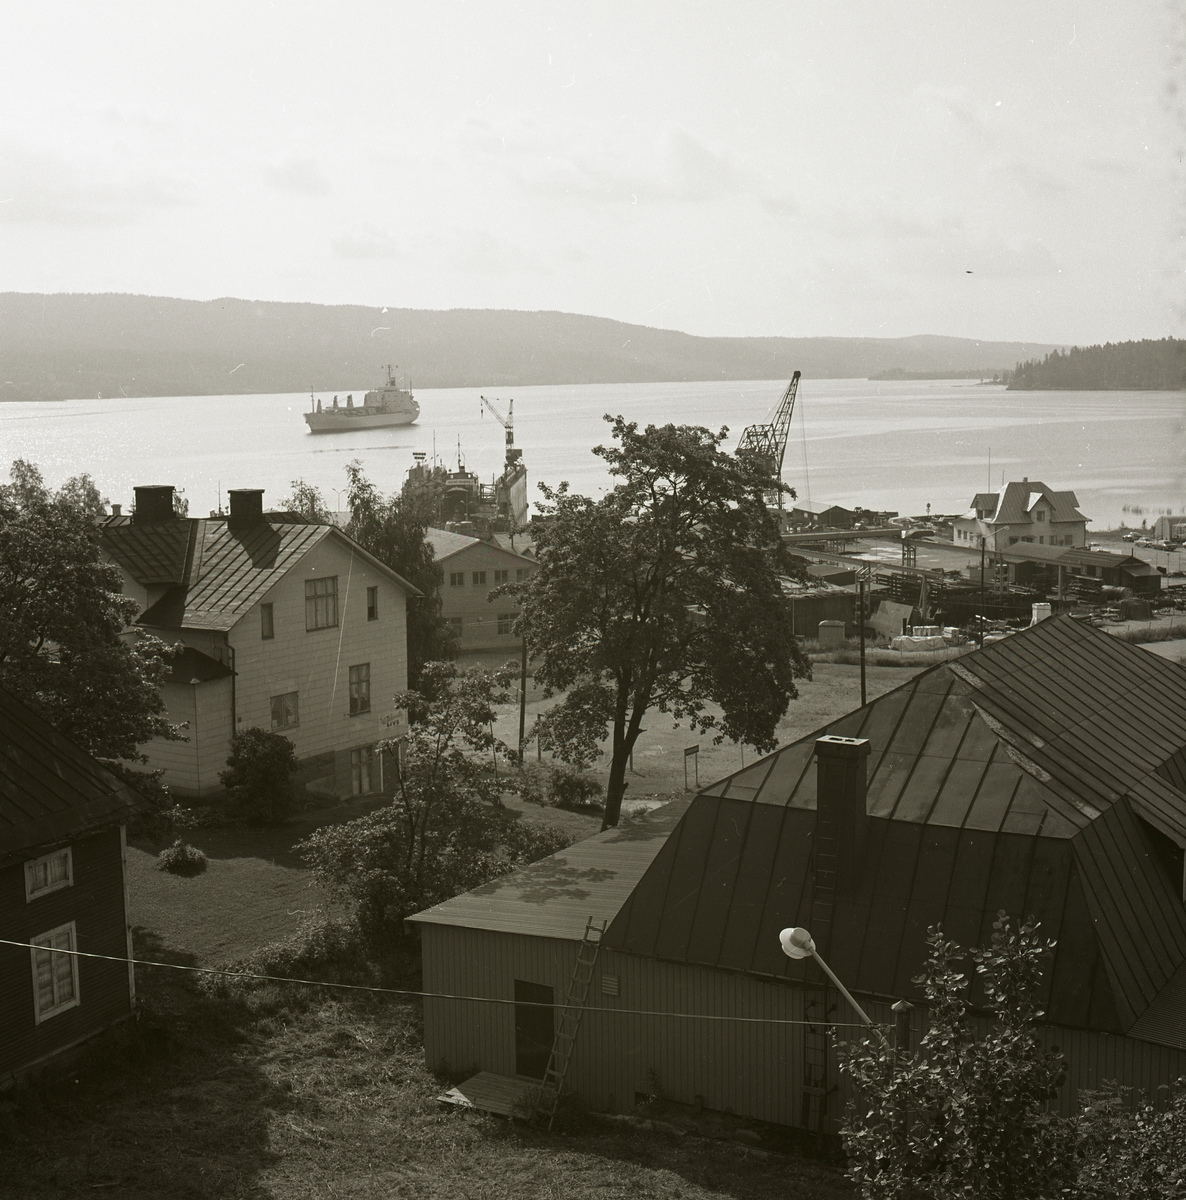 Utsikt över bostadshus och hamnen i Lunde på Sandö. I hamnen syns två kranarmar och ett fartyg är på väg in.